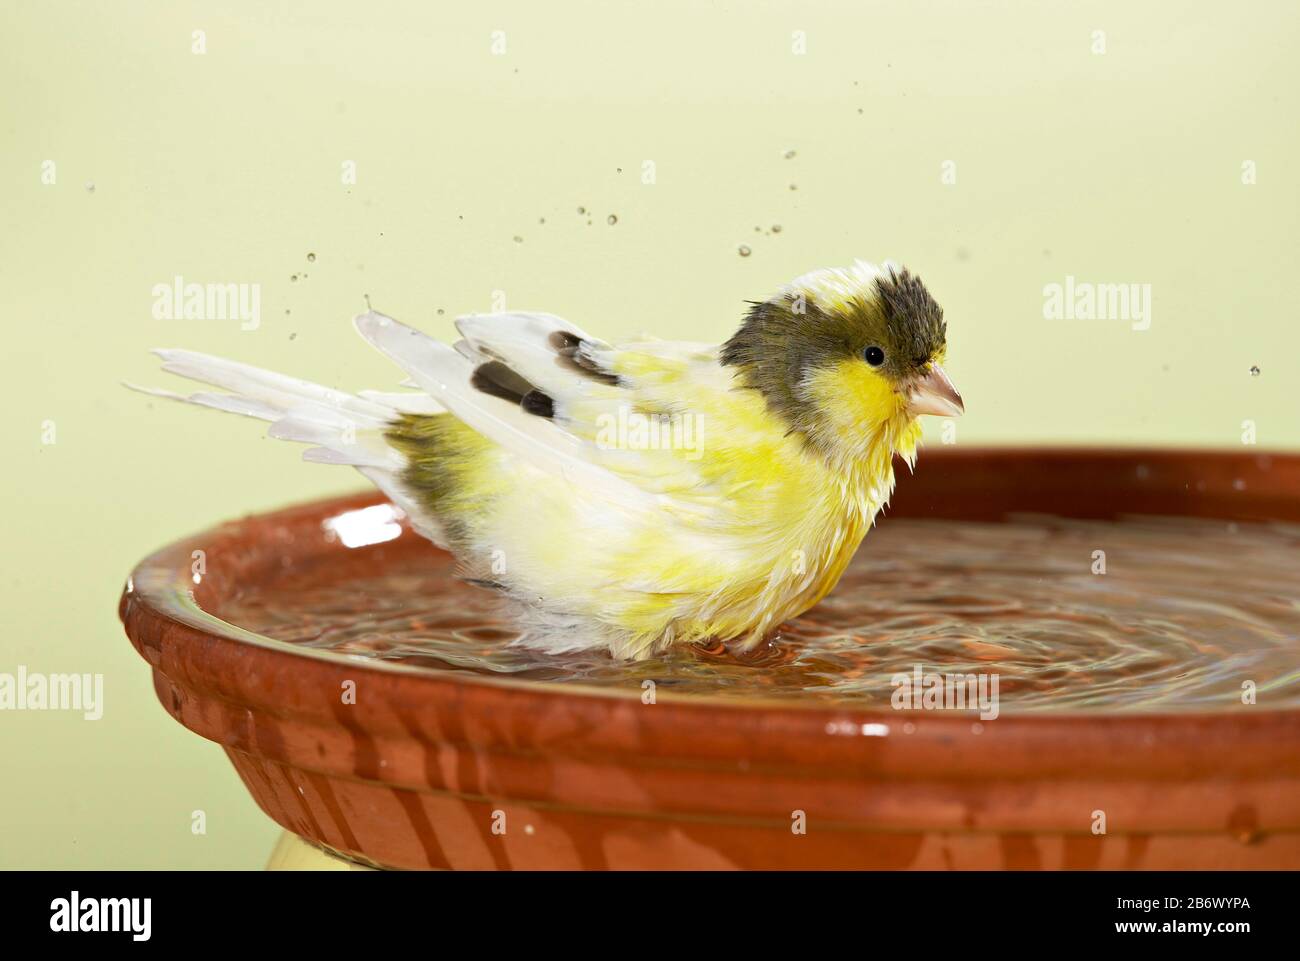 Canari domestique. Baignade d'oiseaux jaunes et bruns dans un bol d'eau. Allemagne Banque D'Images